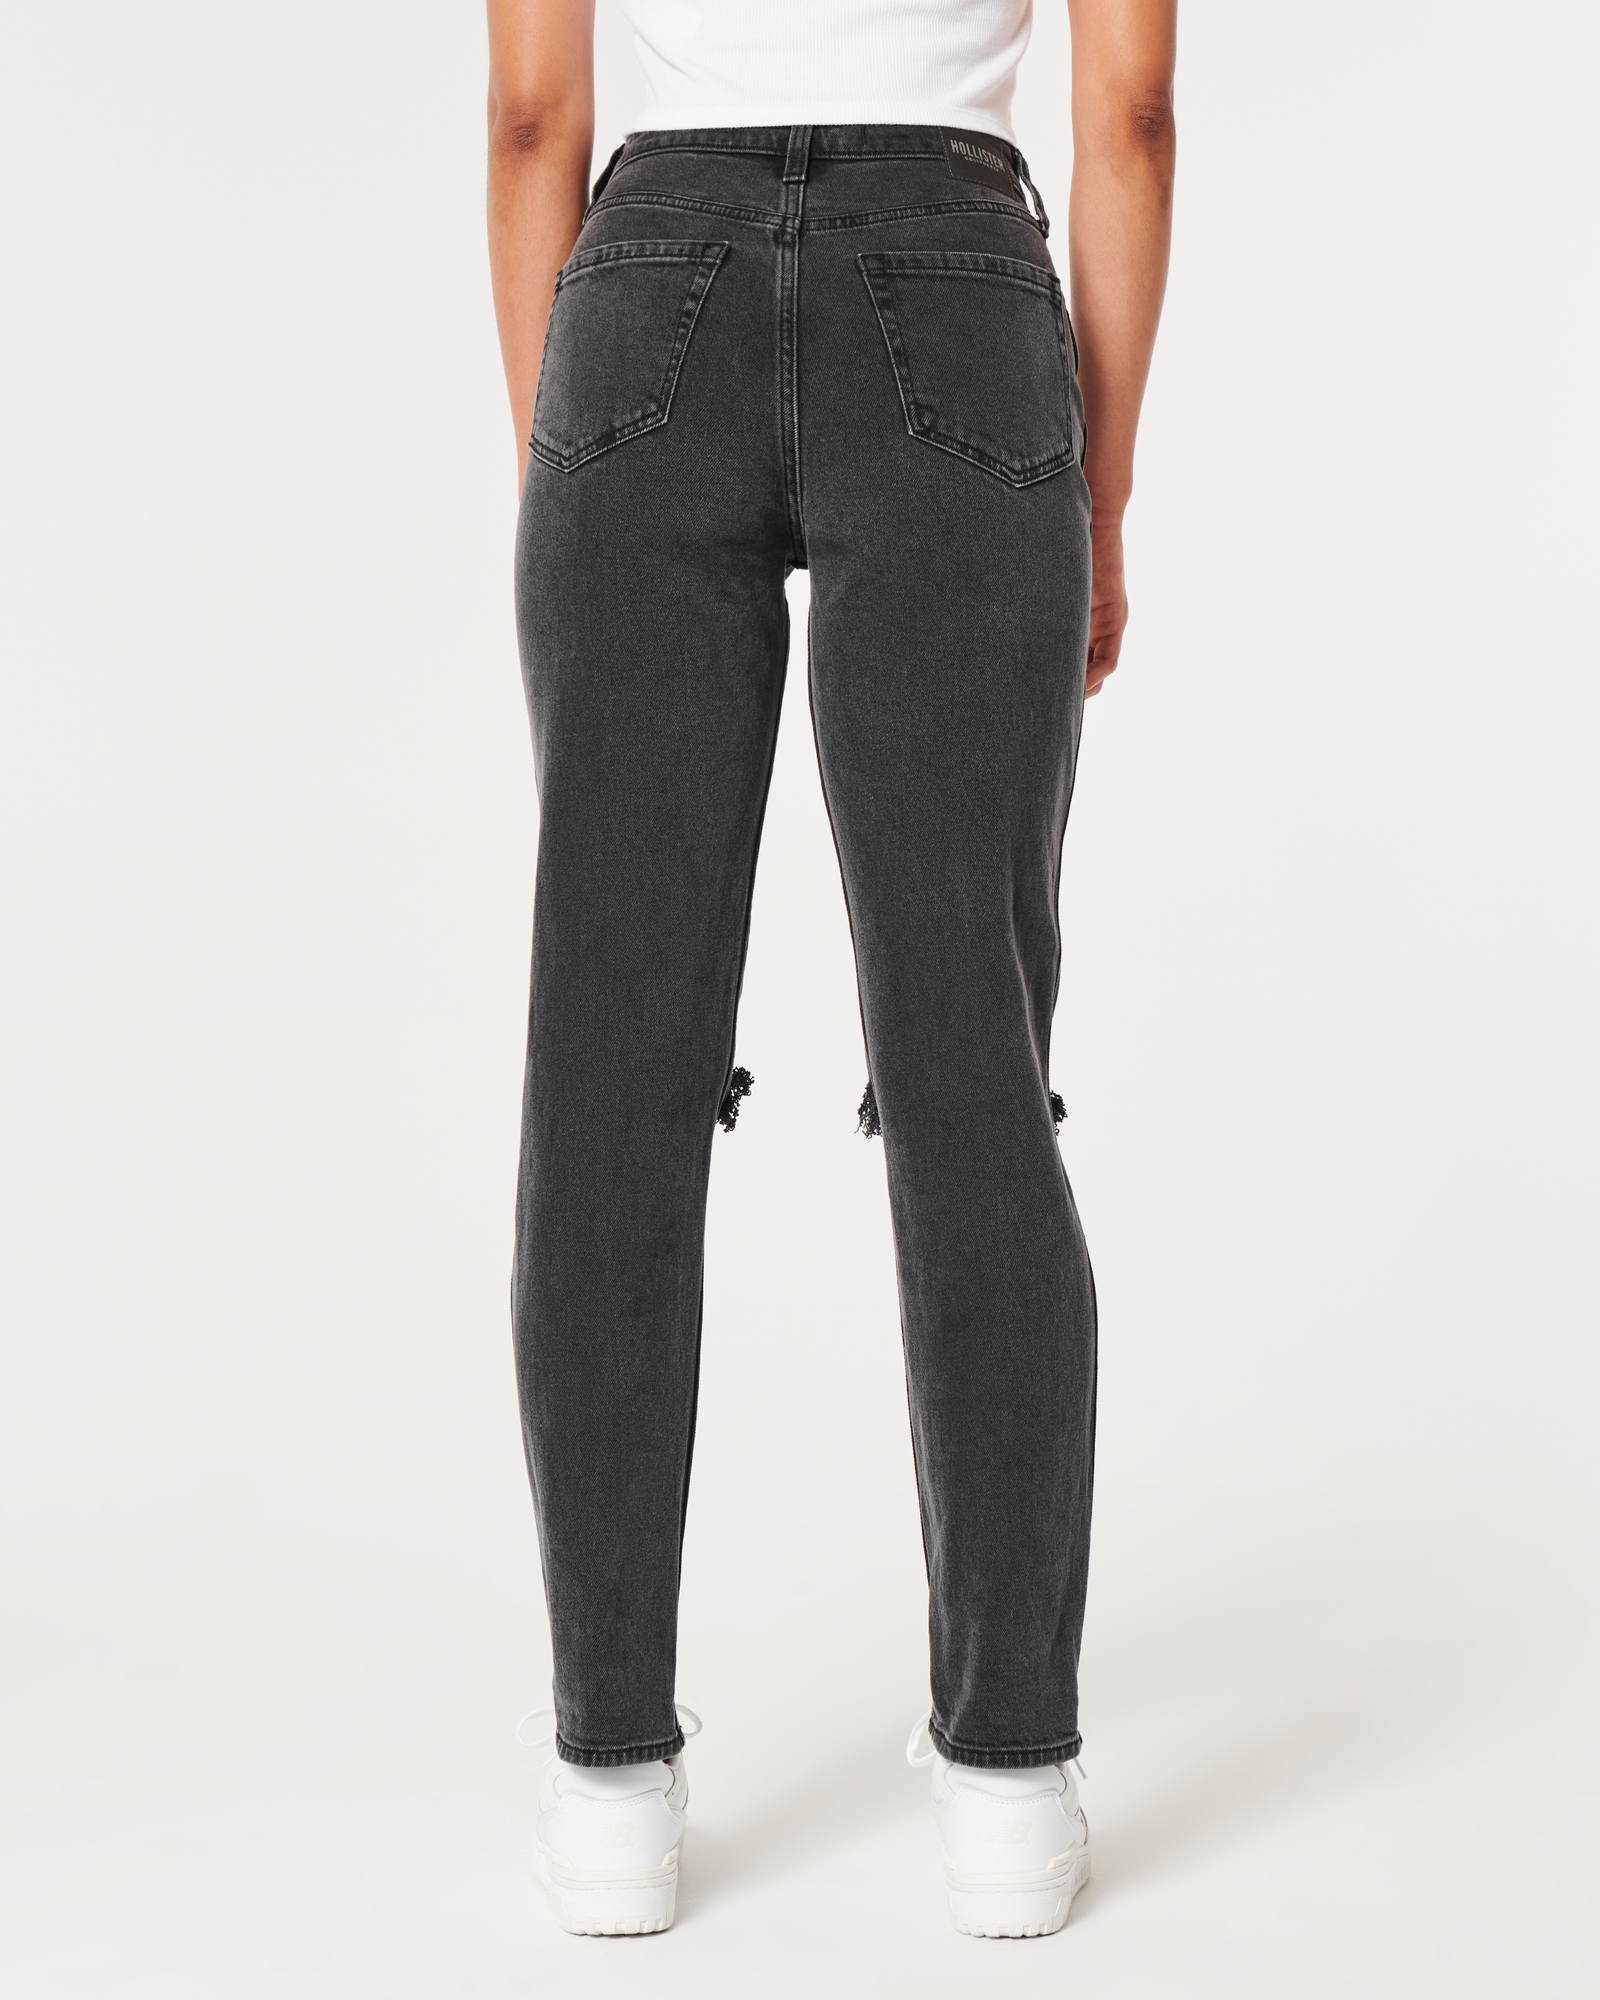 Hollister Co. MOM - Relaxed fit jeans - washed black/black denim -  Zalando.de